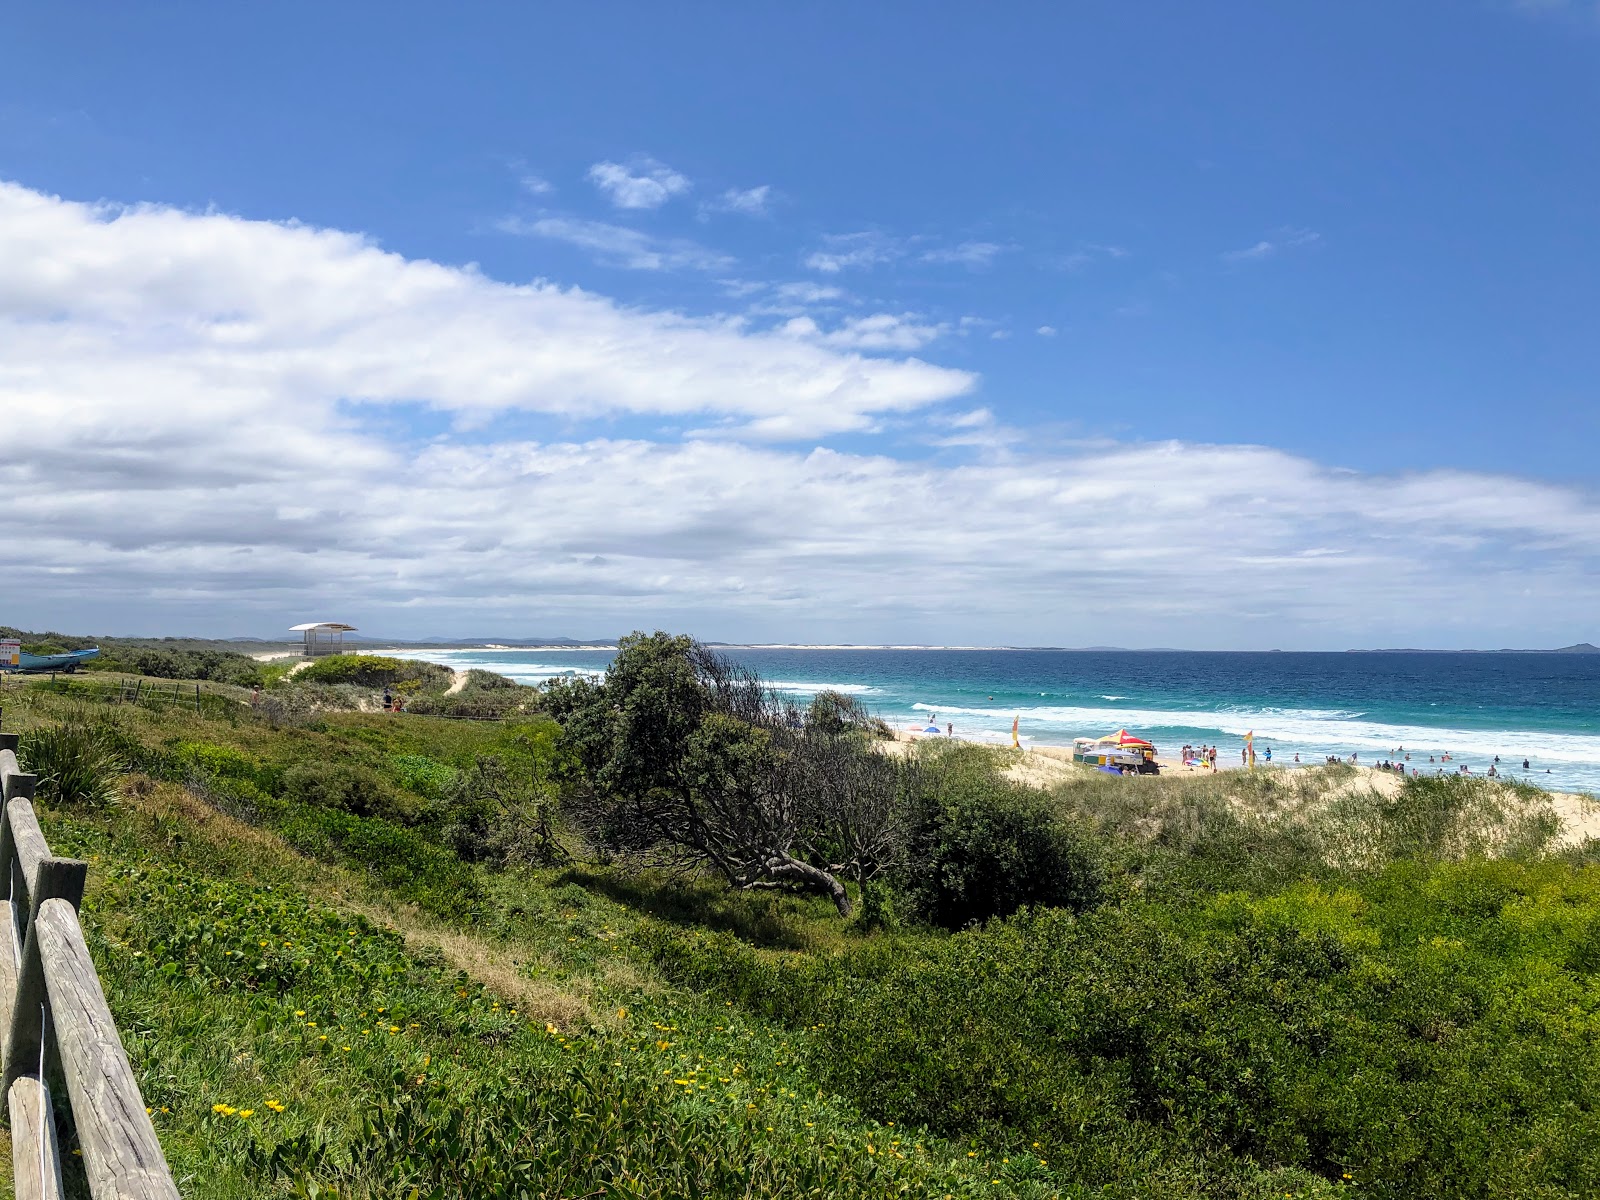 Foto de Wanderrabah Beach localizado em área natural